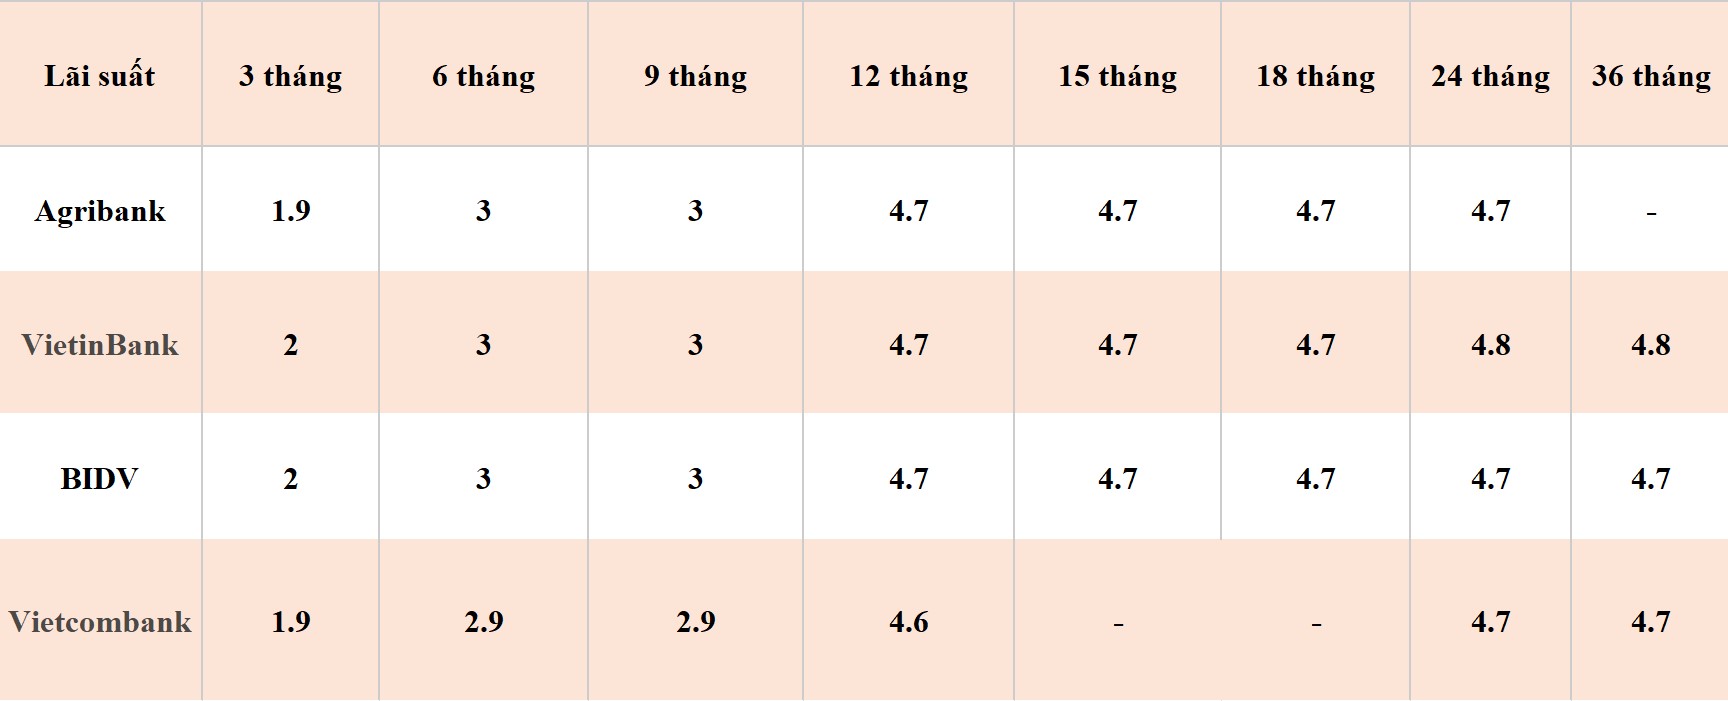 Bảng so sánh lãi suất các kỳ hạn tại Vietcombank, Agribank, VietinBank và BIDV. Số liệu ghi nhận ngày 6.4.2024. Đơn vị tính: %/năm. Bảng: Khương Duy 